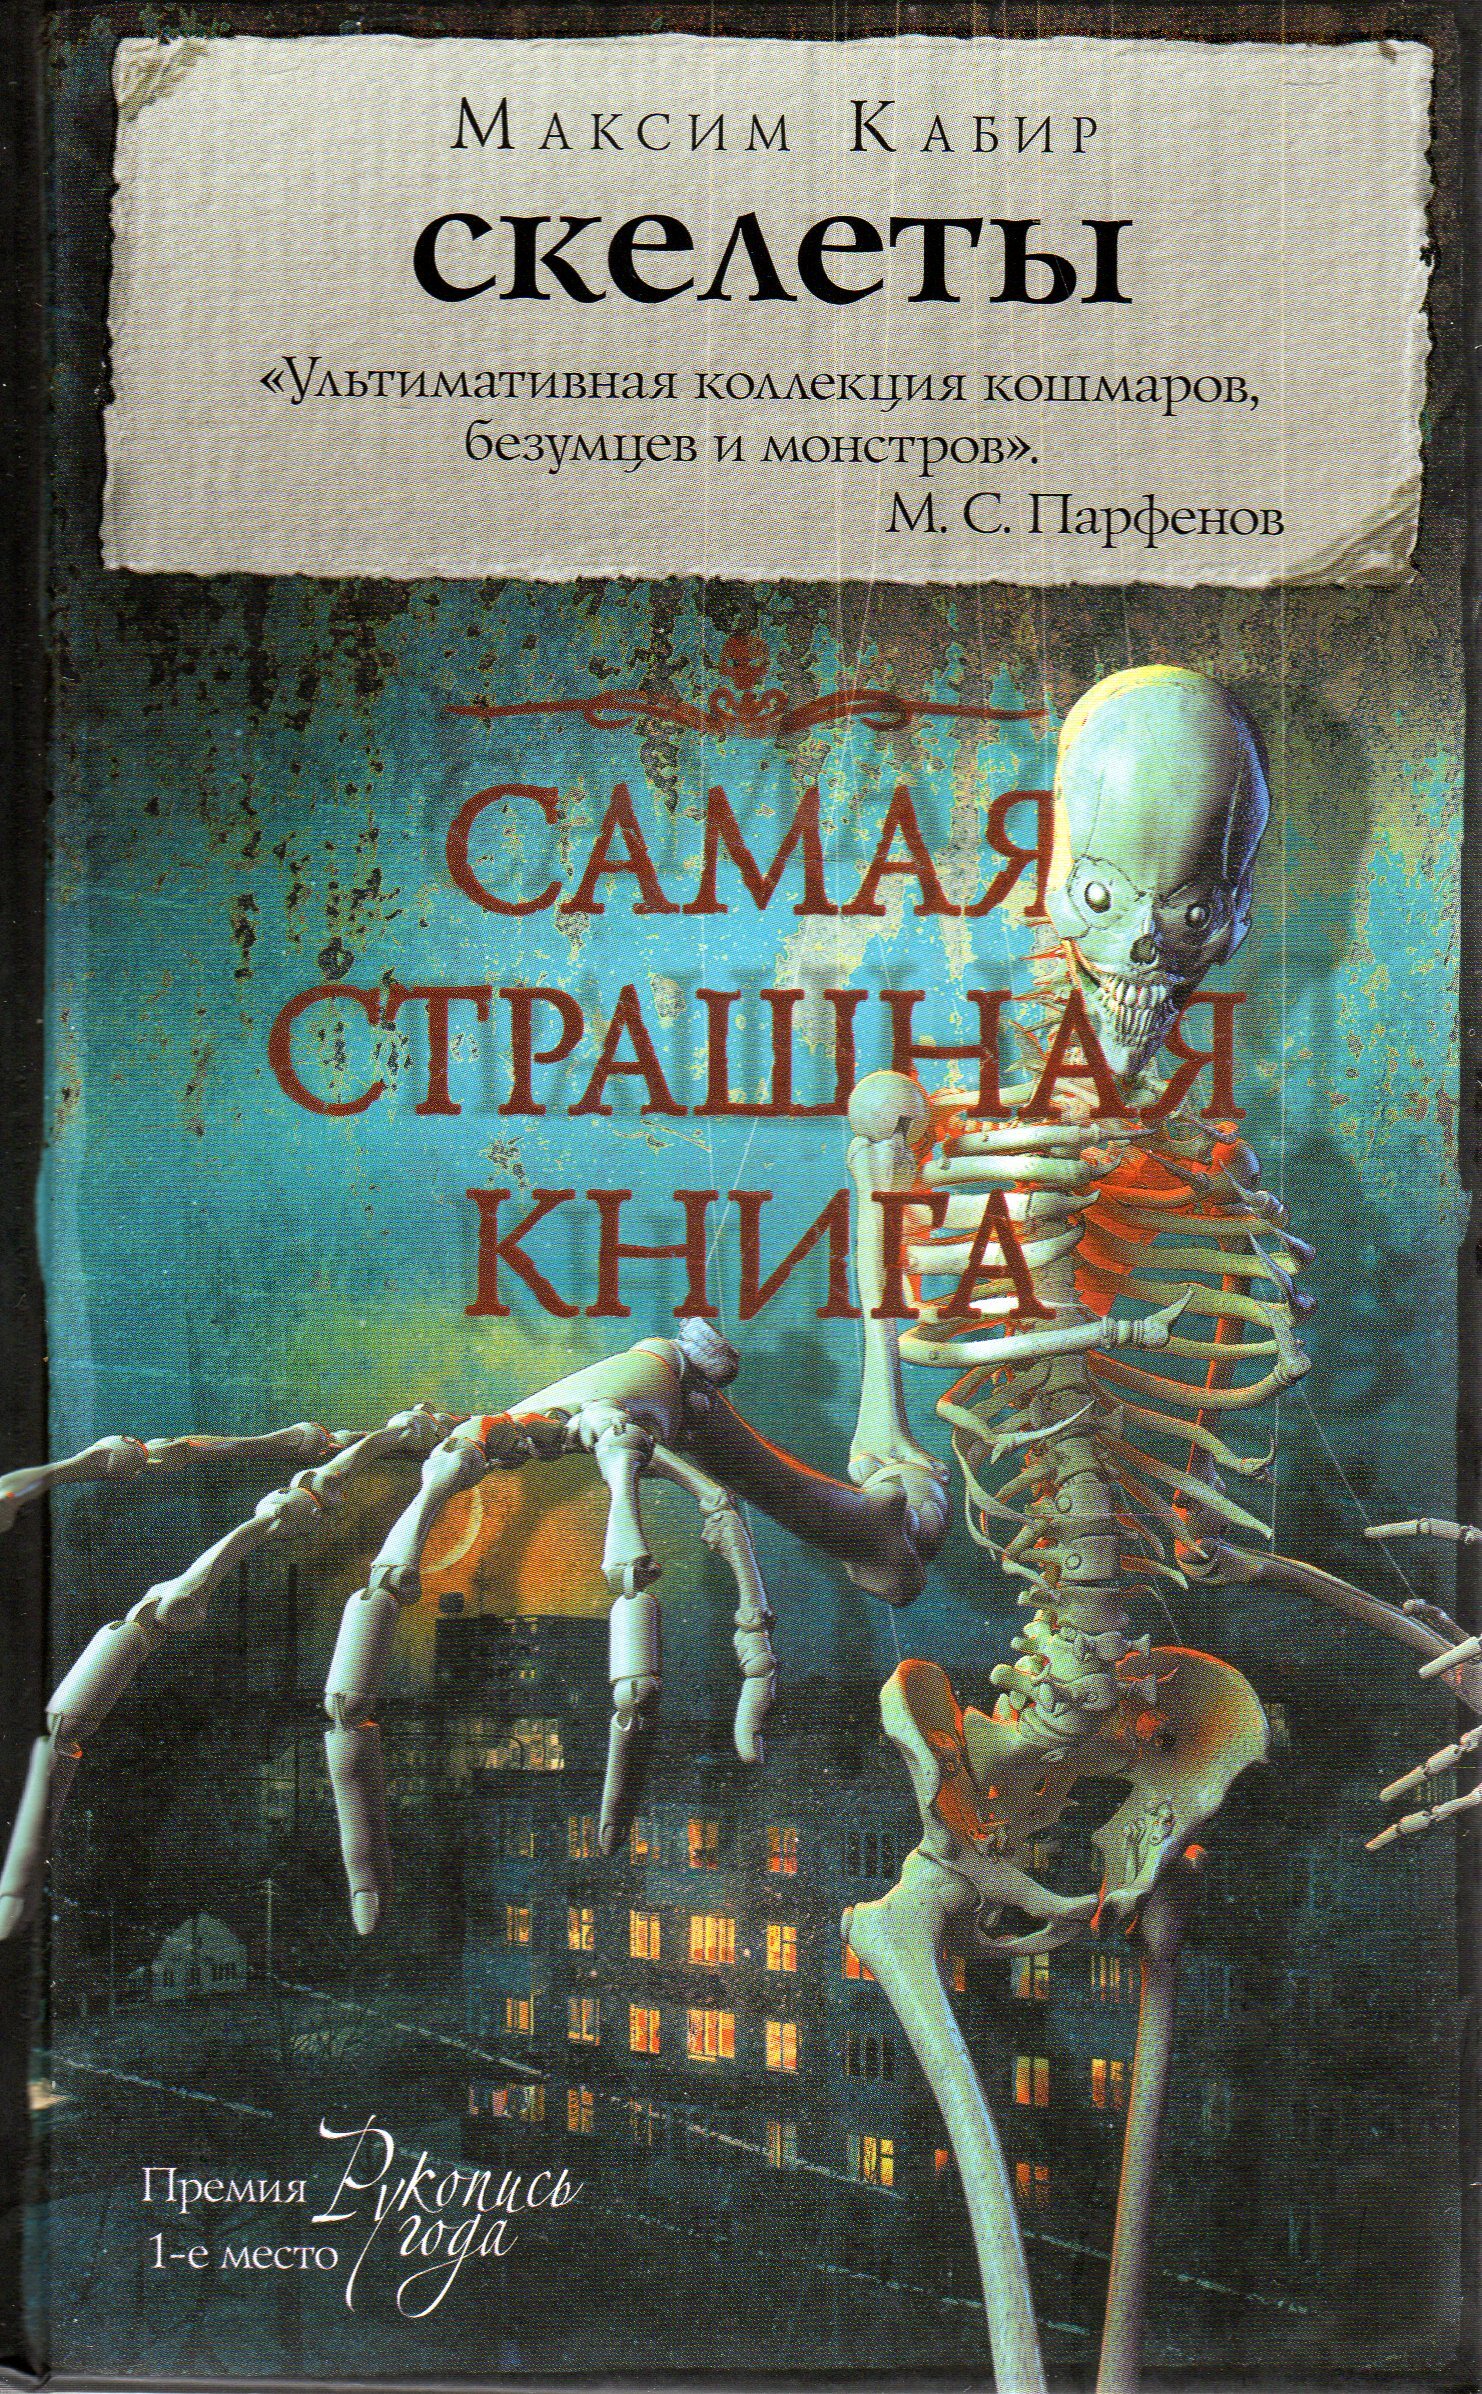 Том страшных книг. Кабир - скелеты книга. Самая страшная книга.